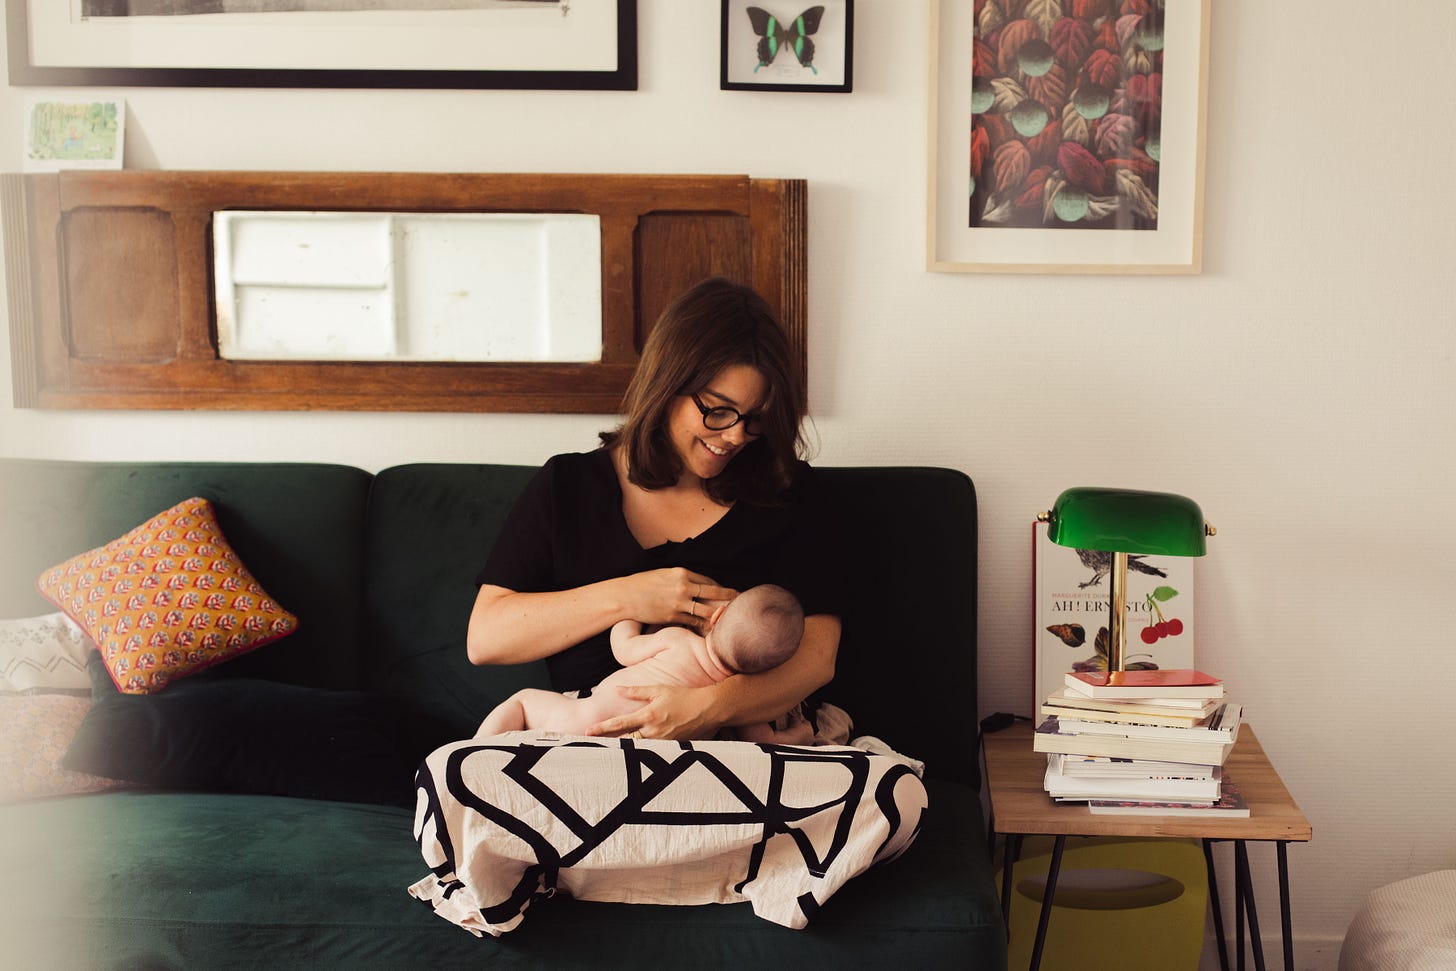 Une femme assise sur un canapé allaite un nourrisson. Elle le regarde en souriant.